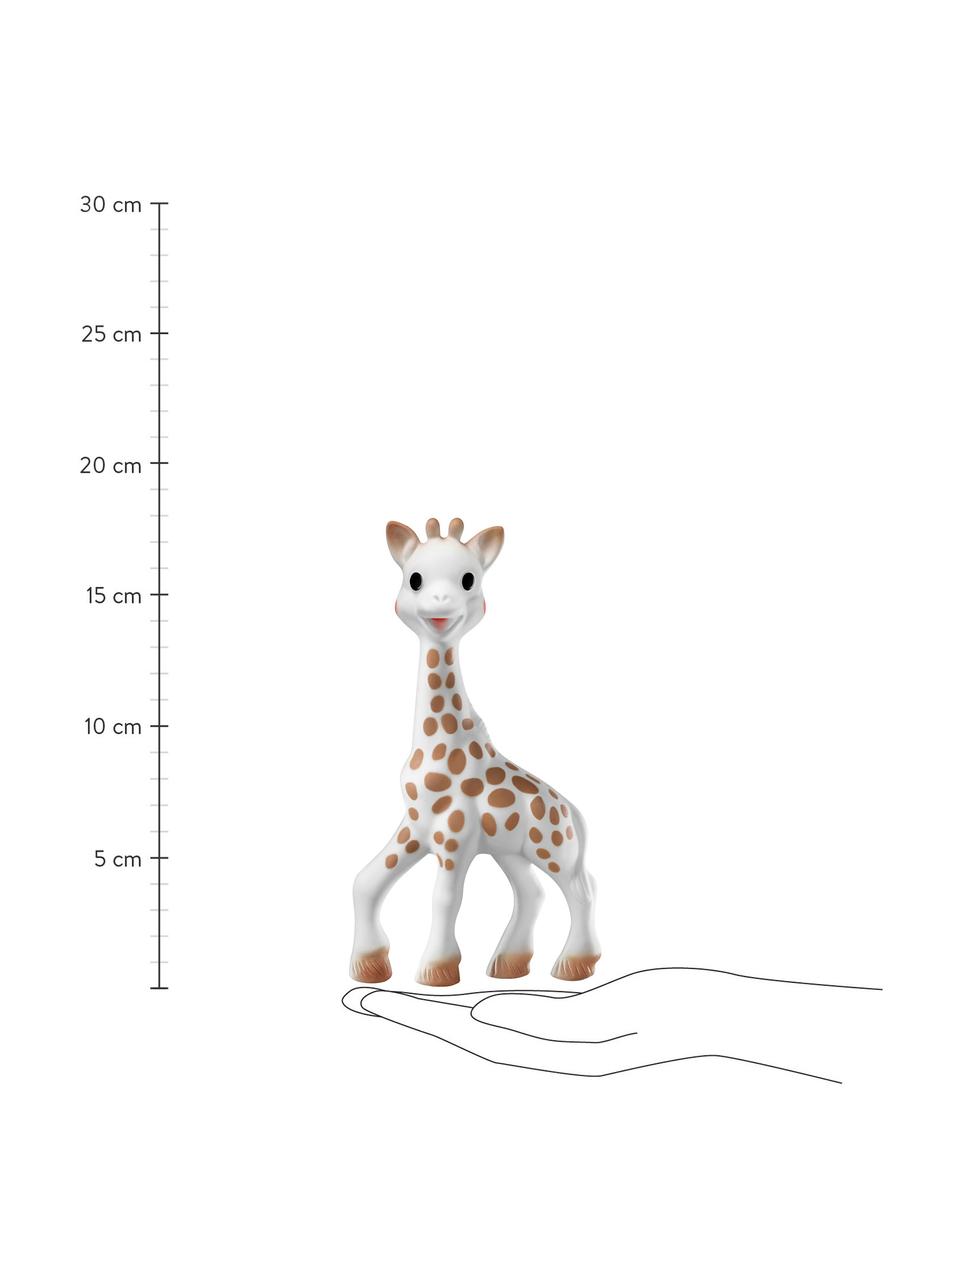 Speelgoed Sophie la girafe met sleutelhanger, 2-delig, 100% natuurlijk rubber, Wit, bruin, Set met verschillende formaten